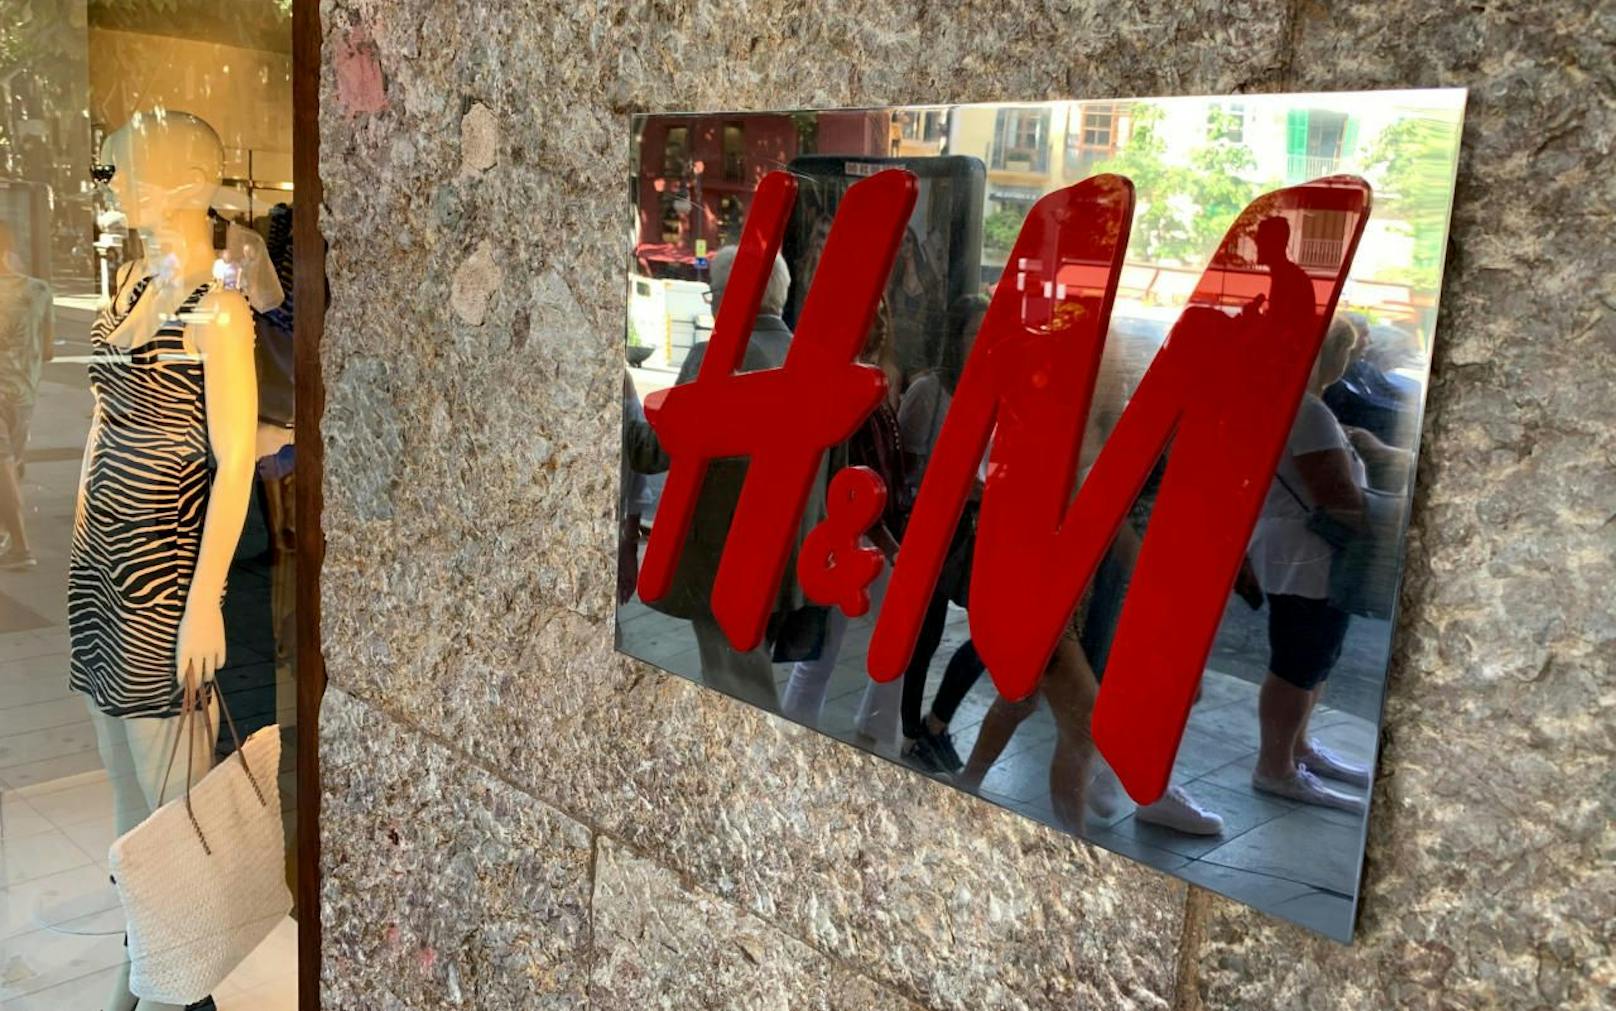 H&amp;M war einer der ersten Unternehmen in der Fast-Fashion-Szene, das eine nachhaltige Kollektion  hatte.Die Vermarktung der nachhaltigen Linie scheint jedoch irreführend zu sein, wie der norwegische Konsumentenschutz nun kritisiert. 